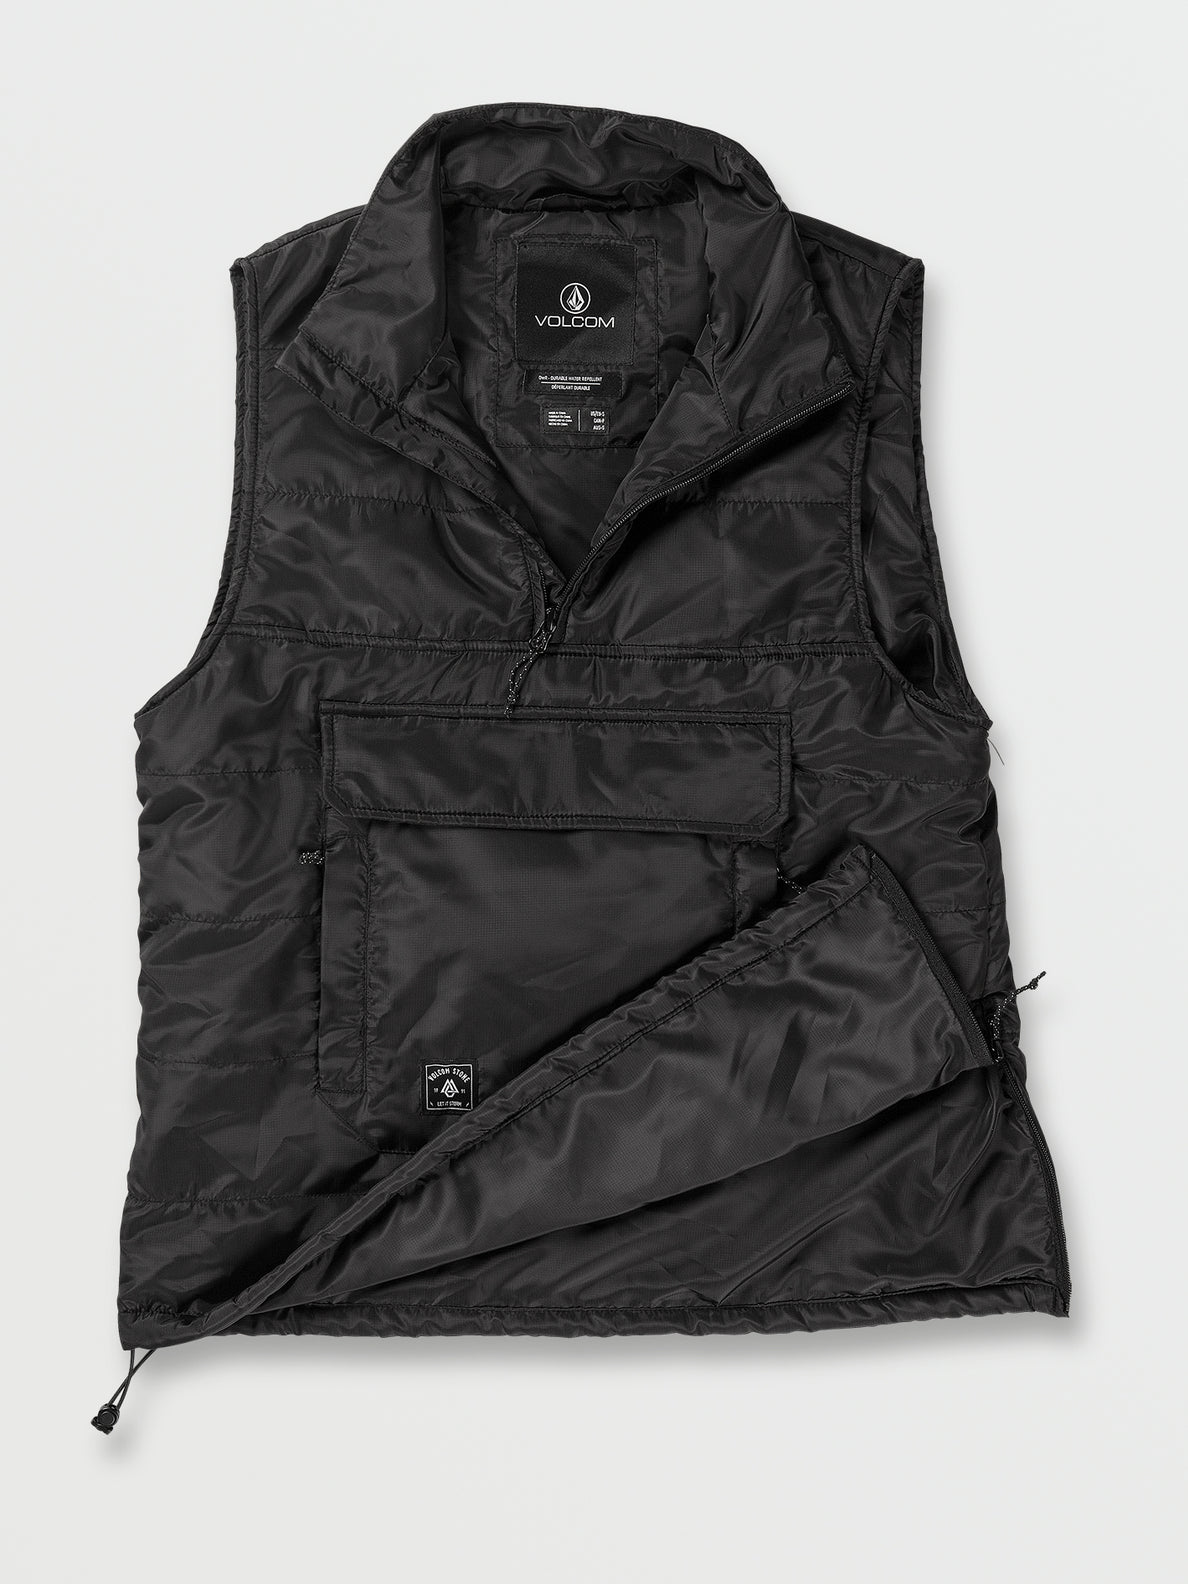 Womens Packable Puff Vest - Black